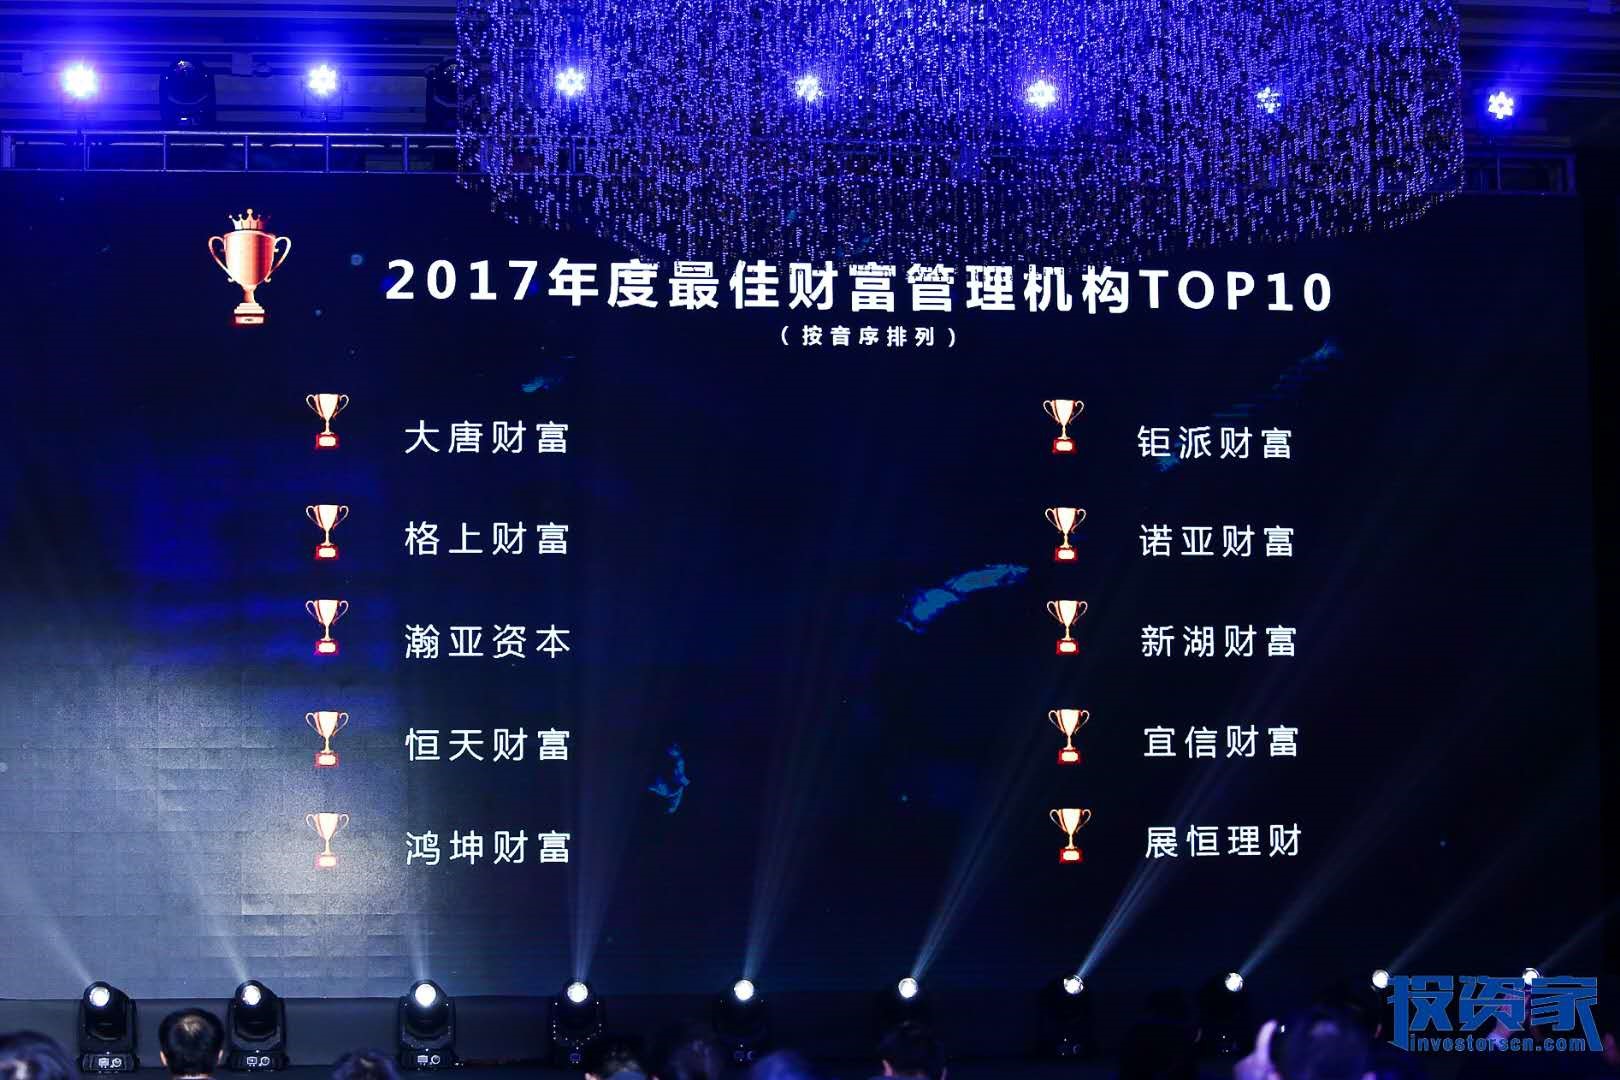 鸿坤财富荣登2017年度最佳财富管理机构TOP10